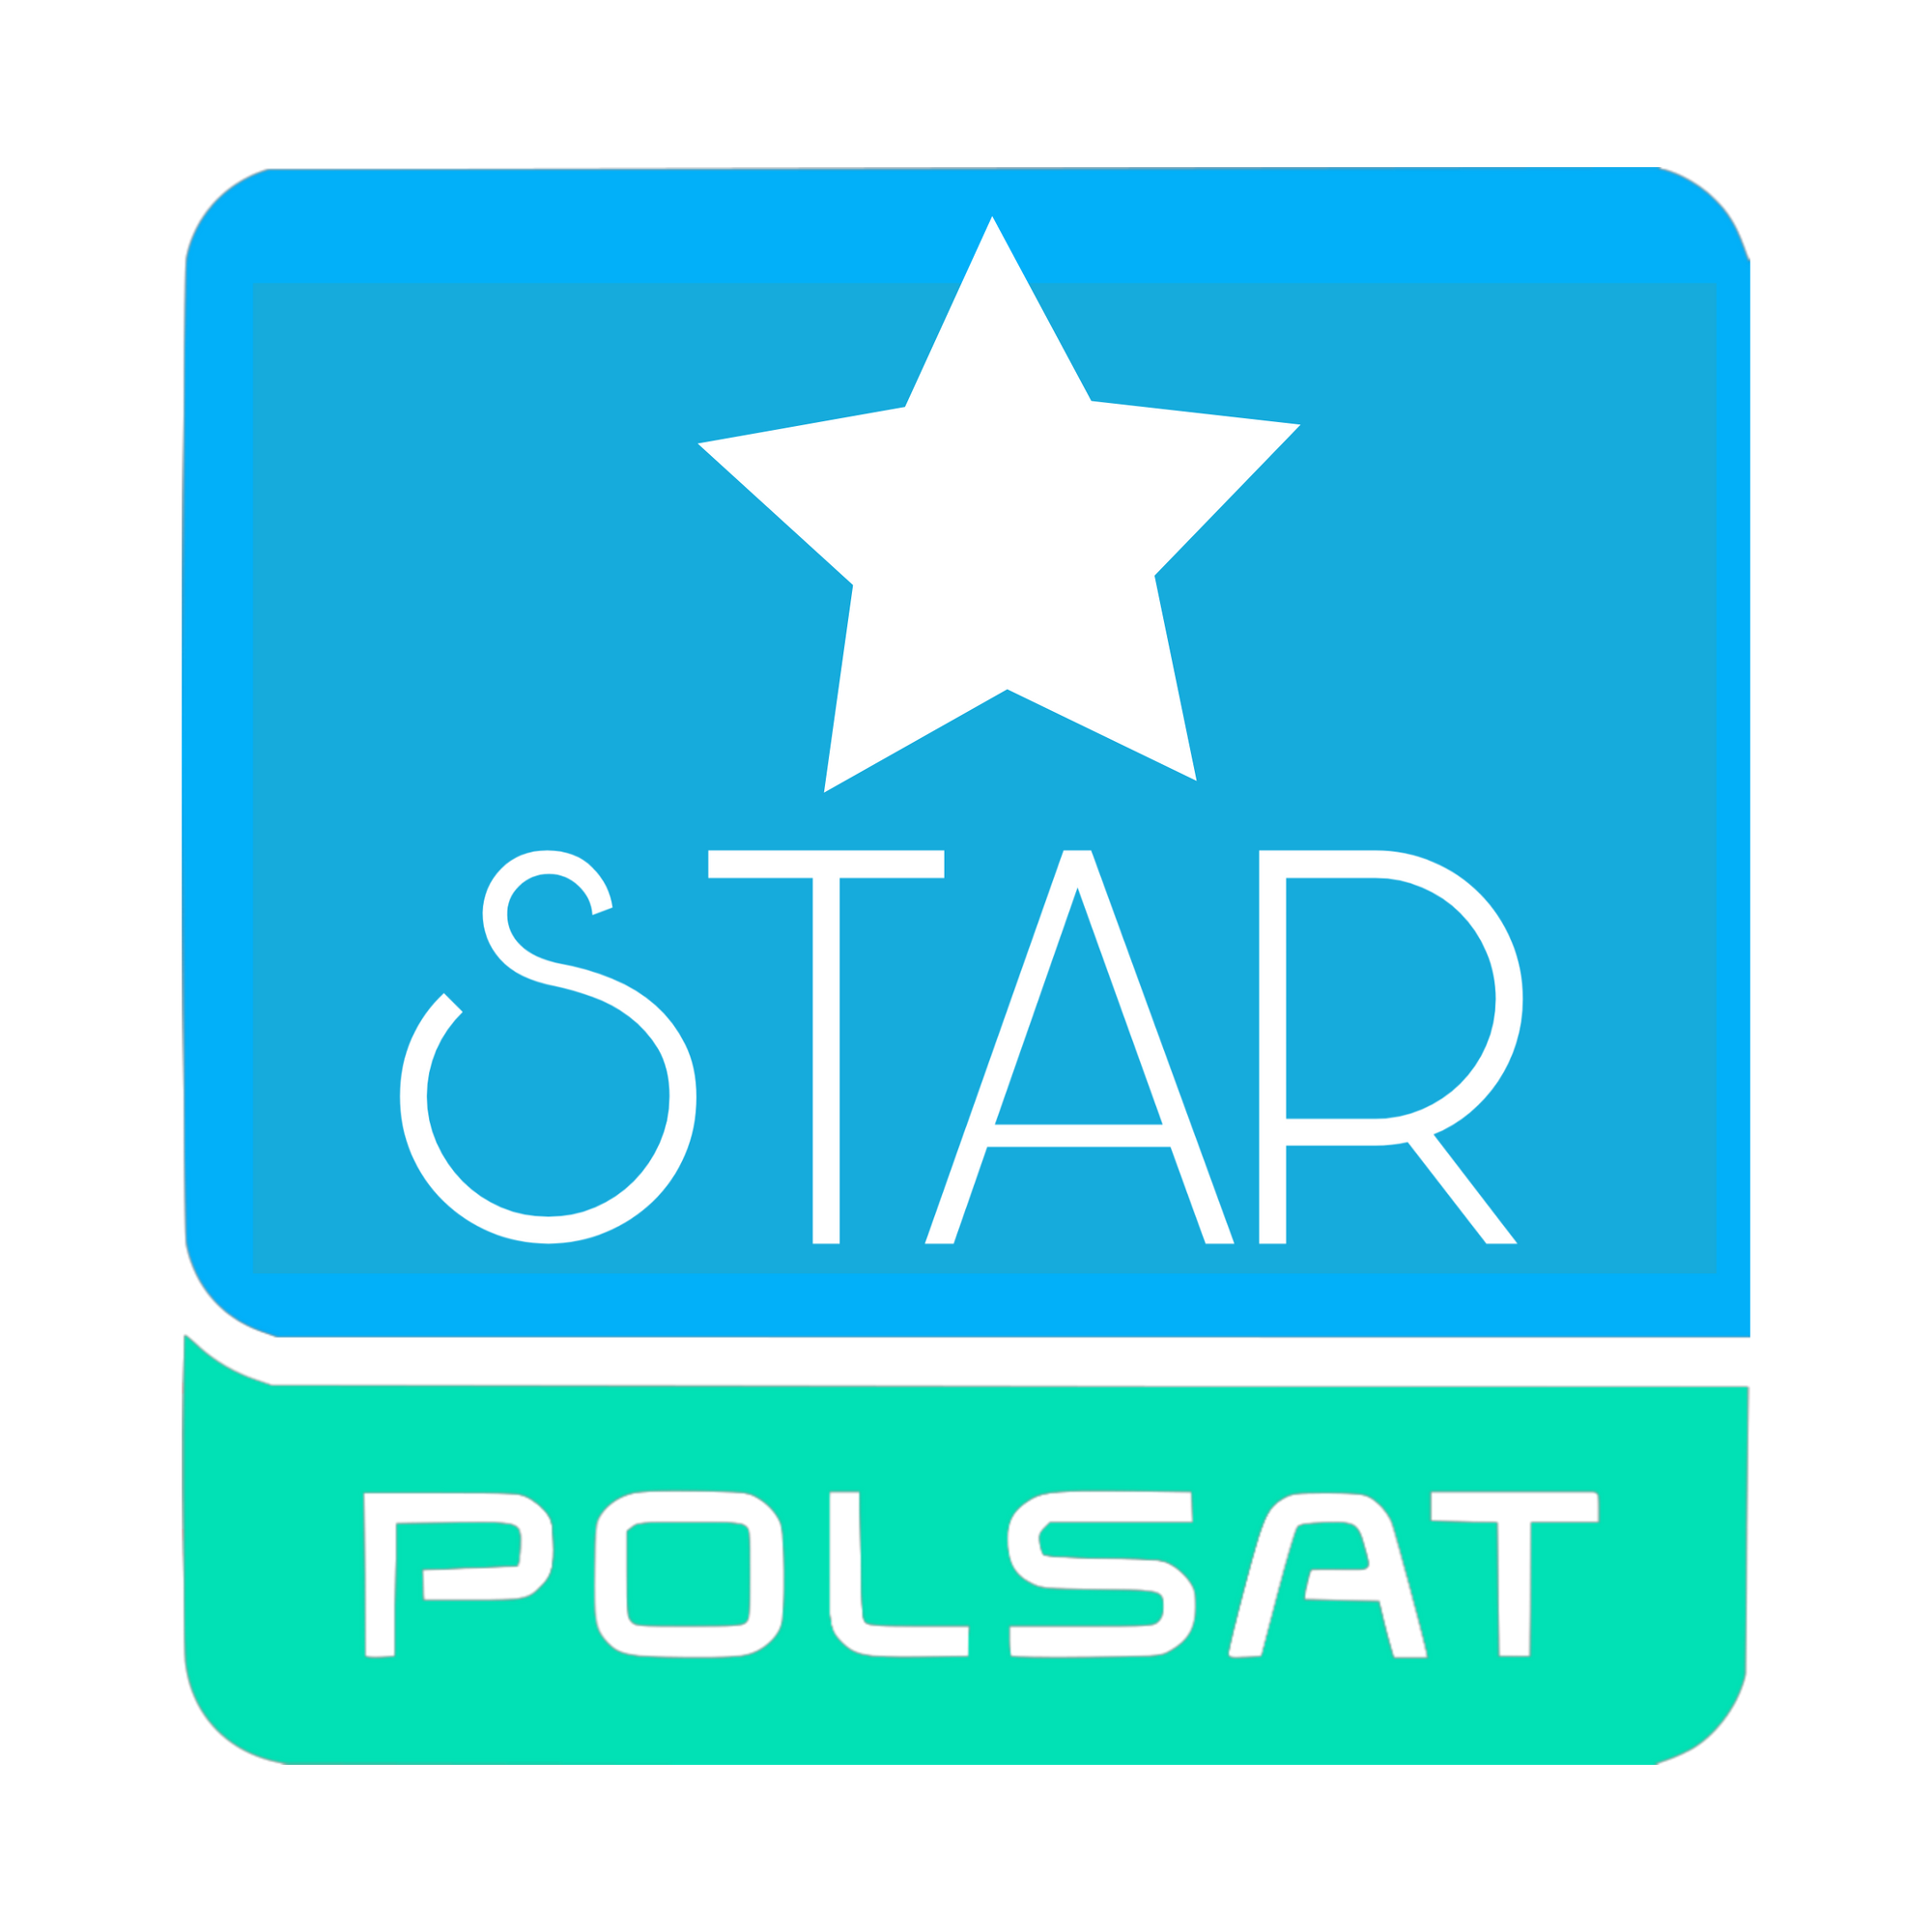 polsat-star-fejkowe-logaekranowe-wiki-fandom